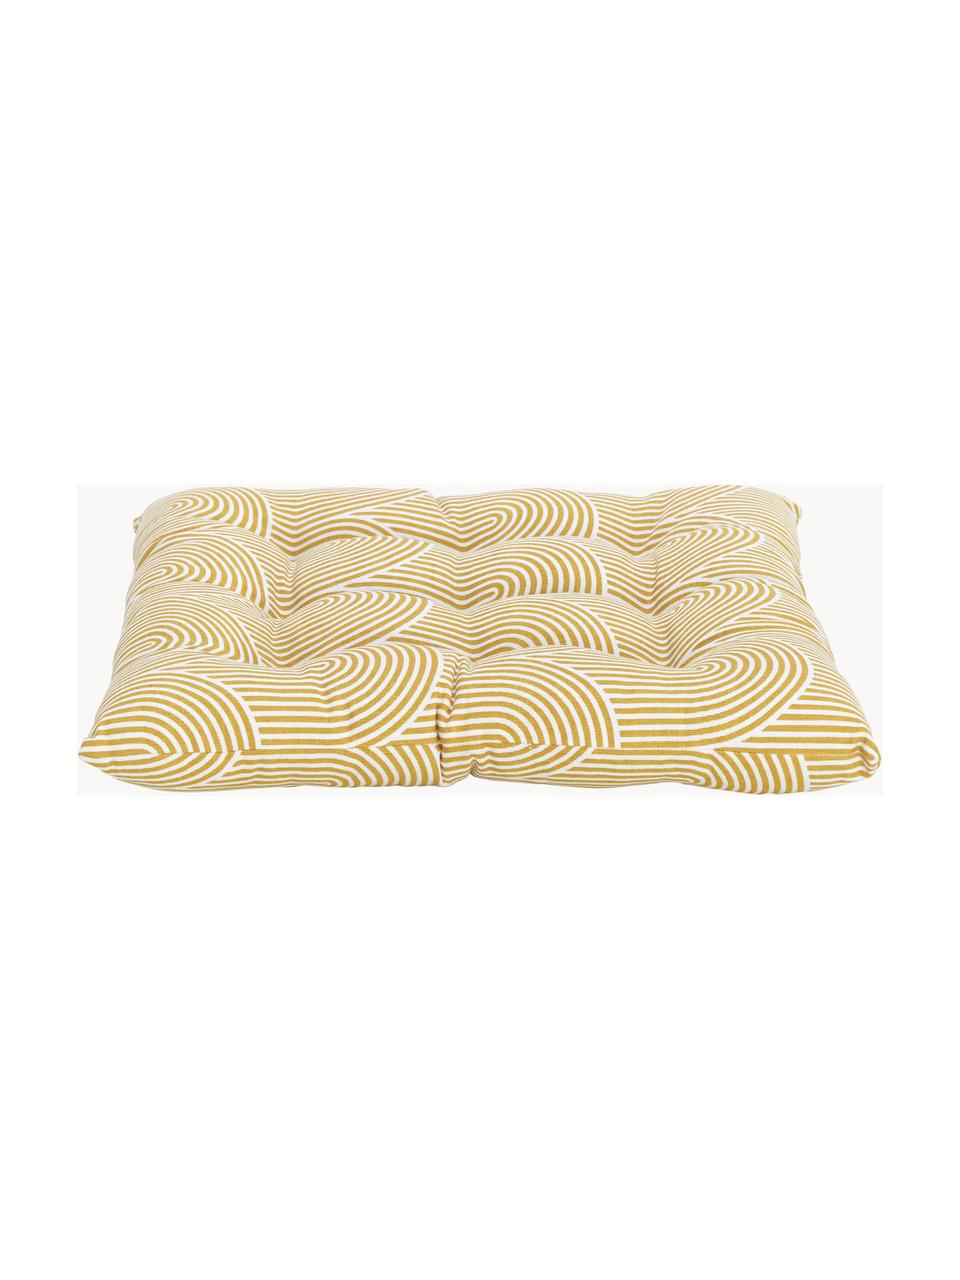 Baumwoll-Sitzkissen Arc, Bezug: 100% Baumwolle, Sonnengelb, Weiß, B 40 x L 40 cm